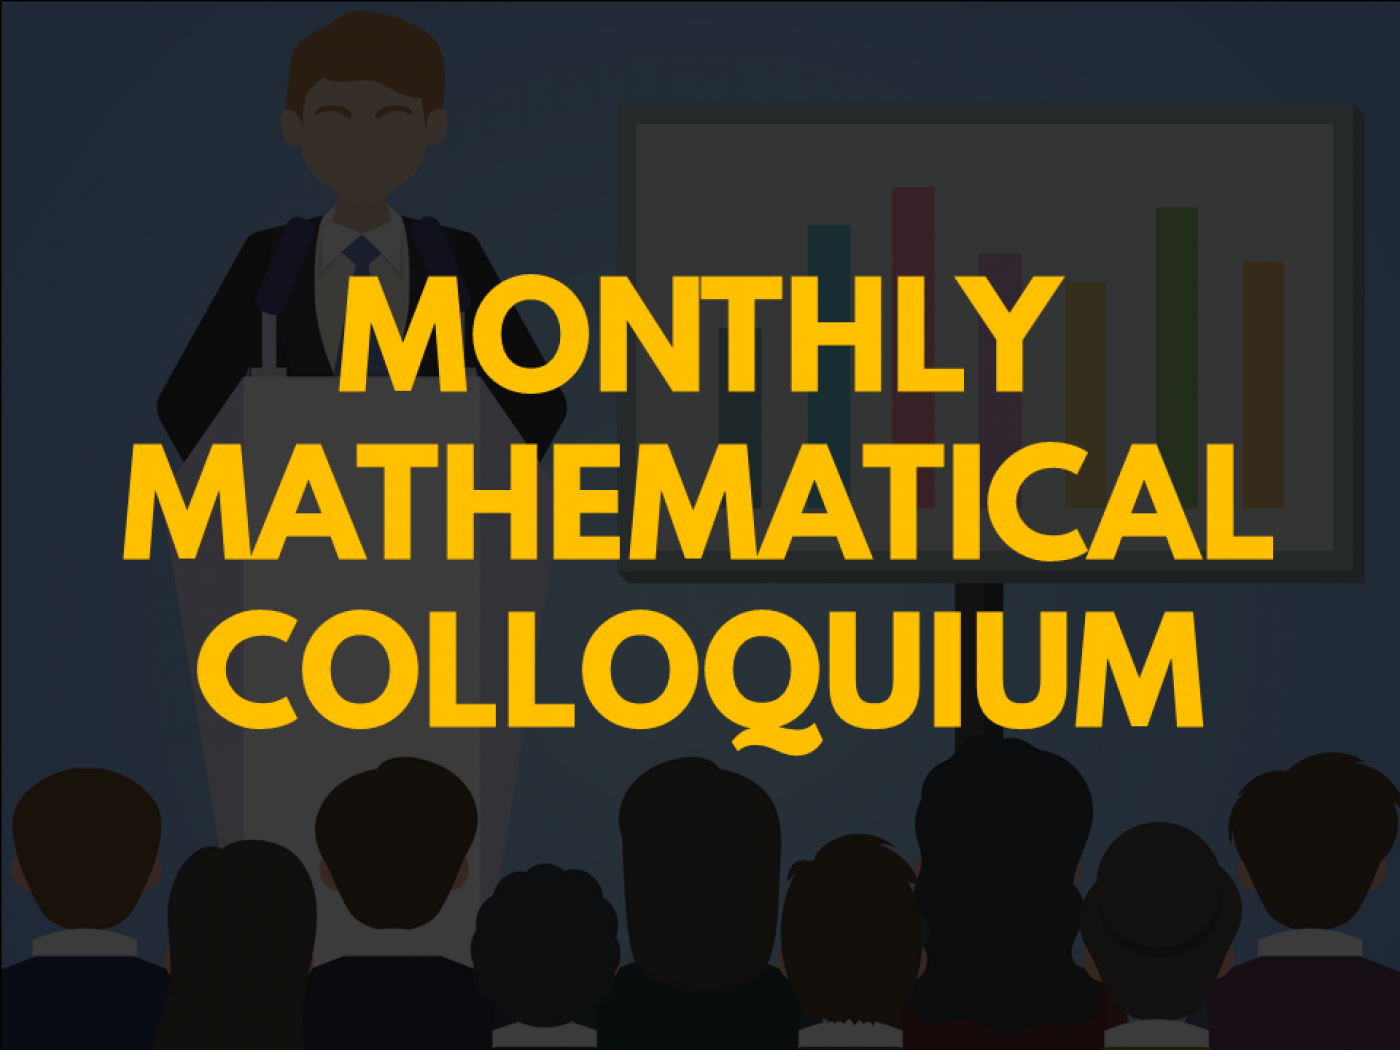  Monthly Mathematical Colloquium (MMC) 4, 2021